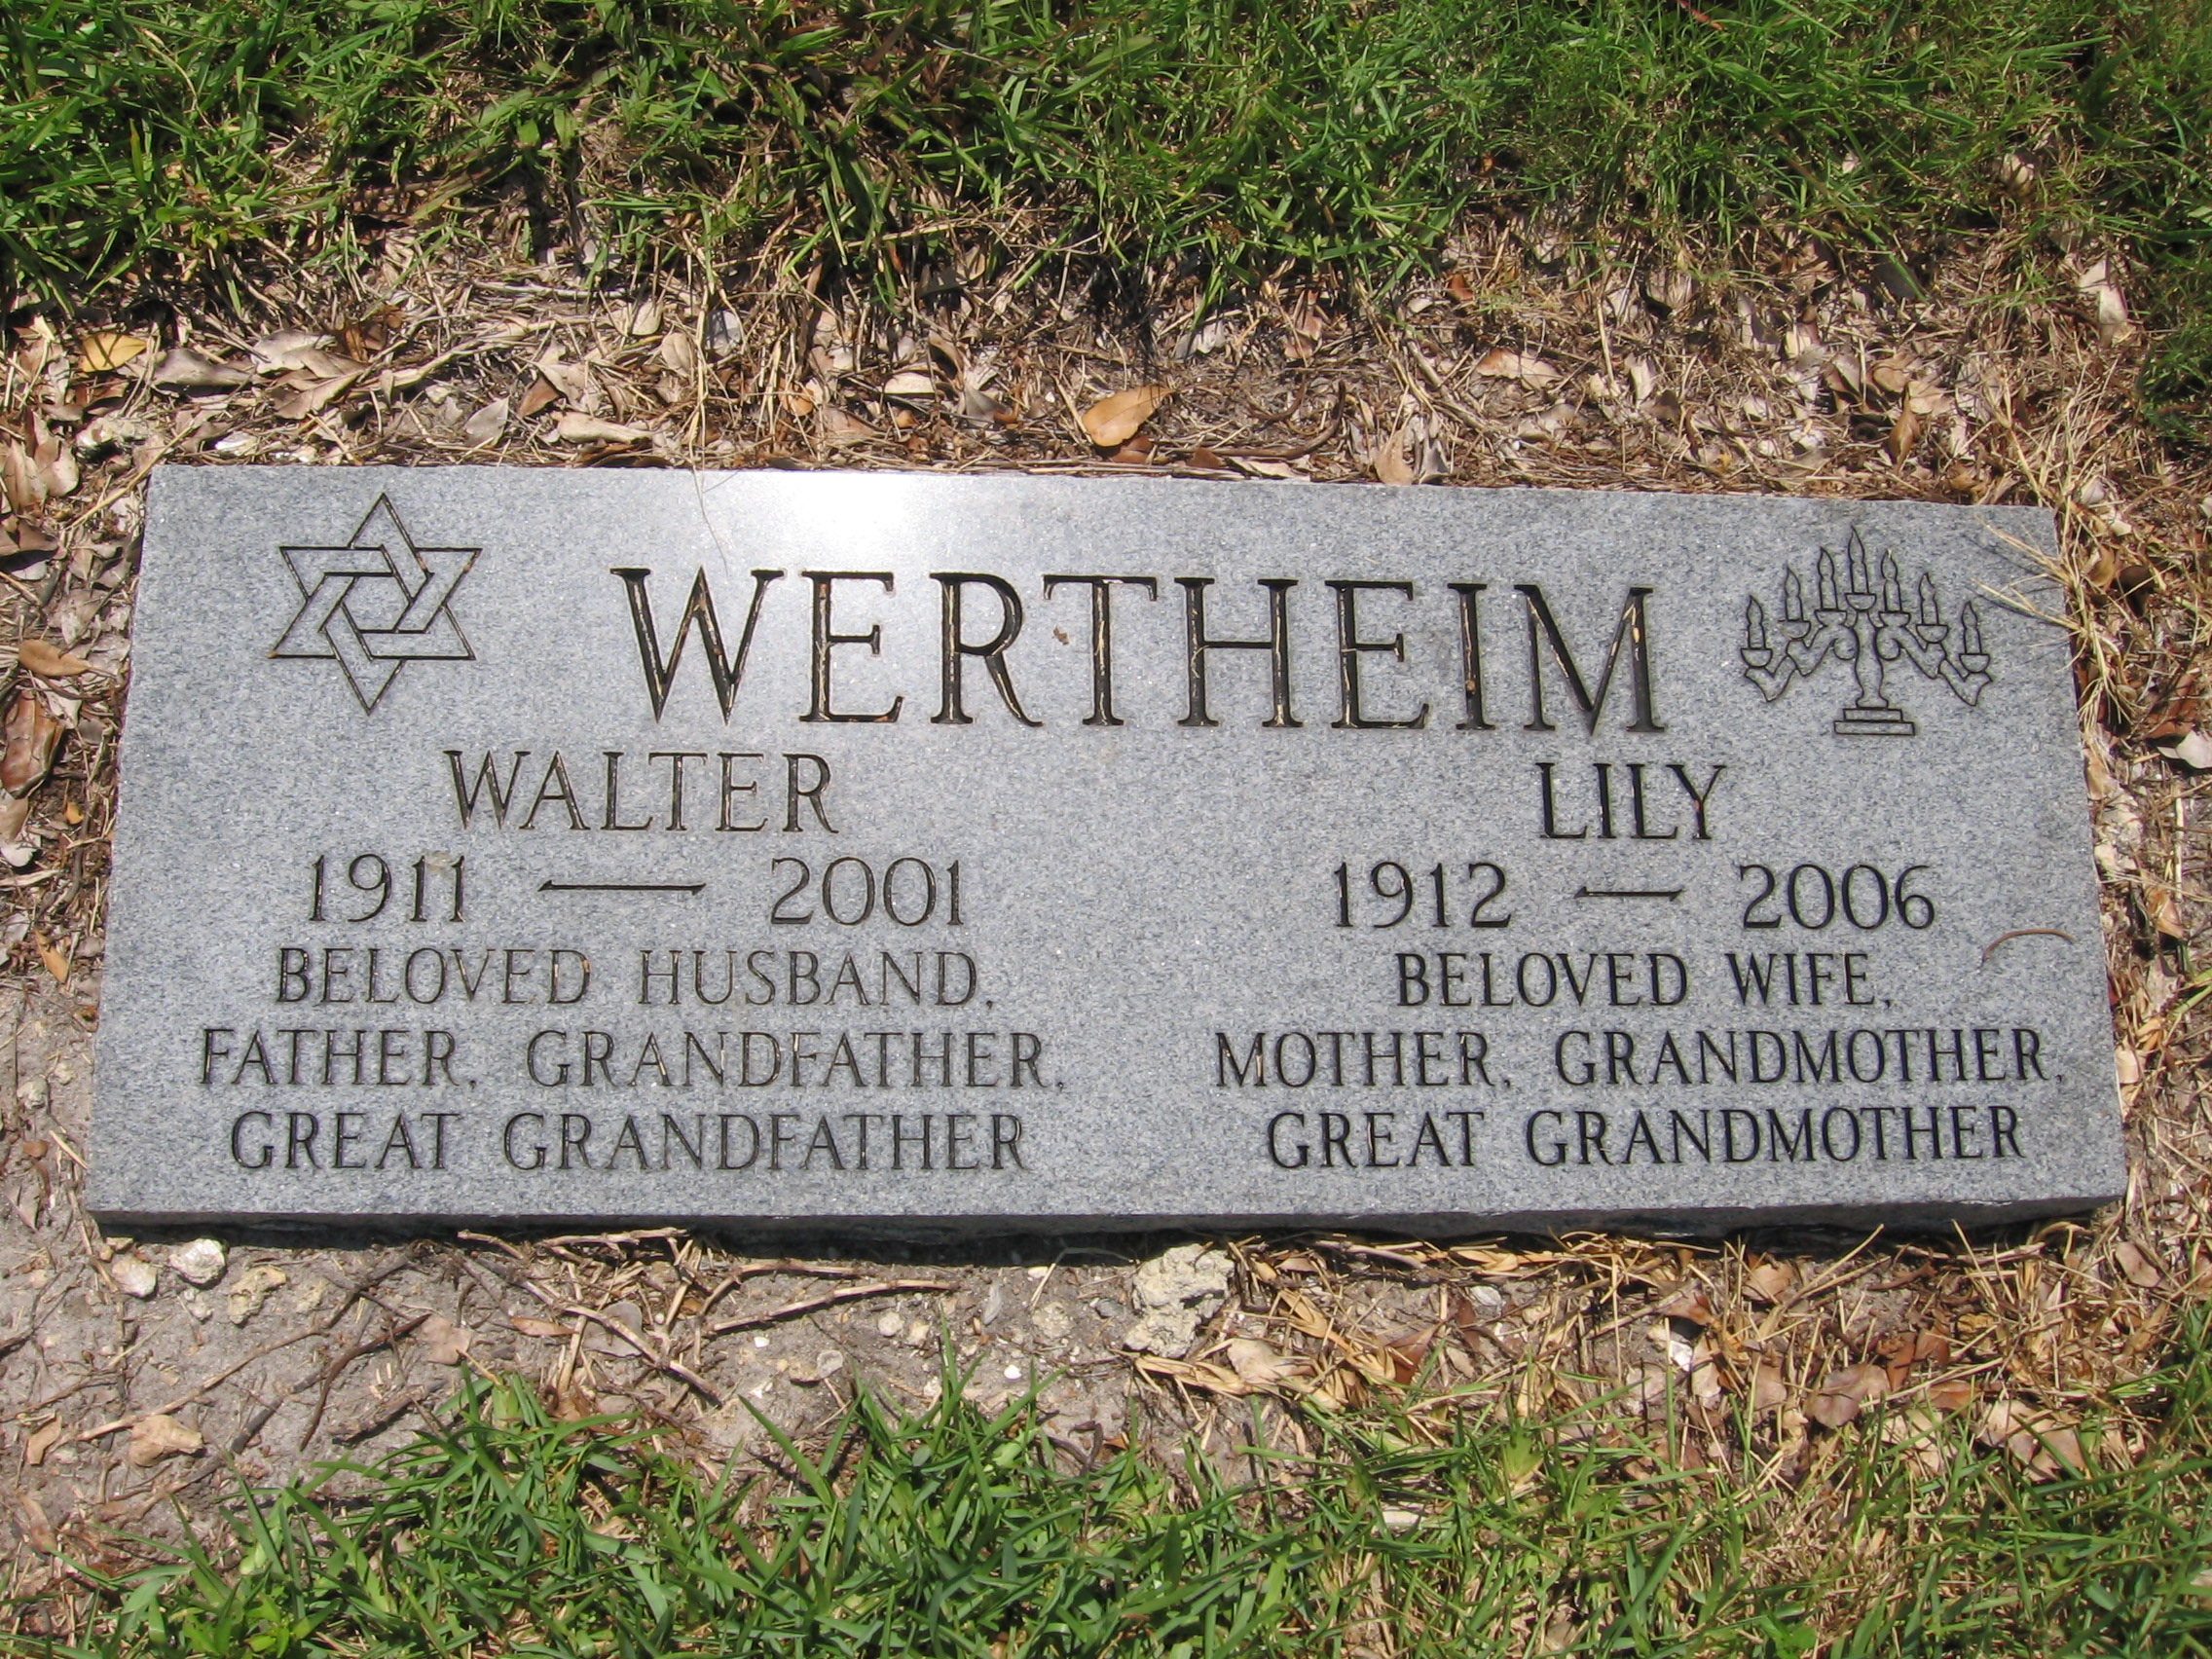 Lily Wertheim